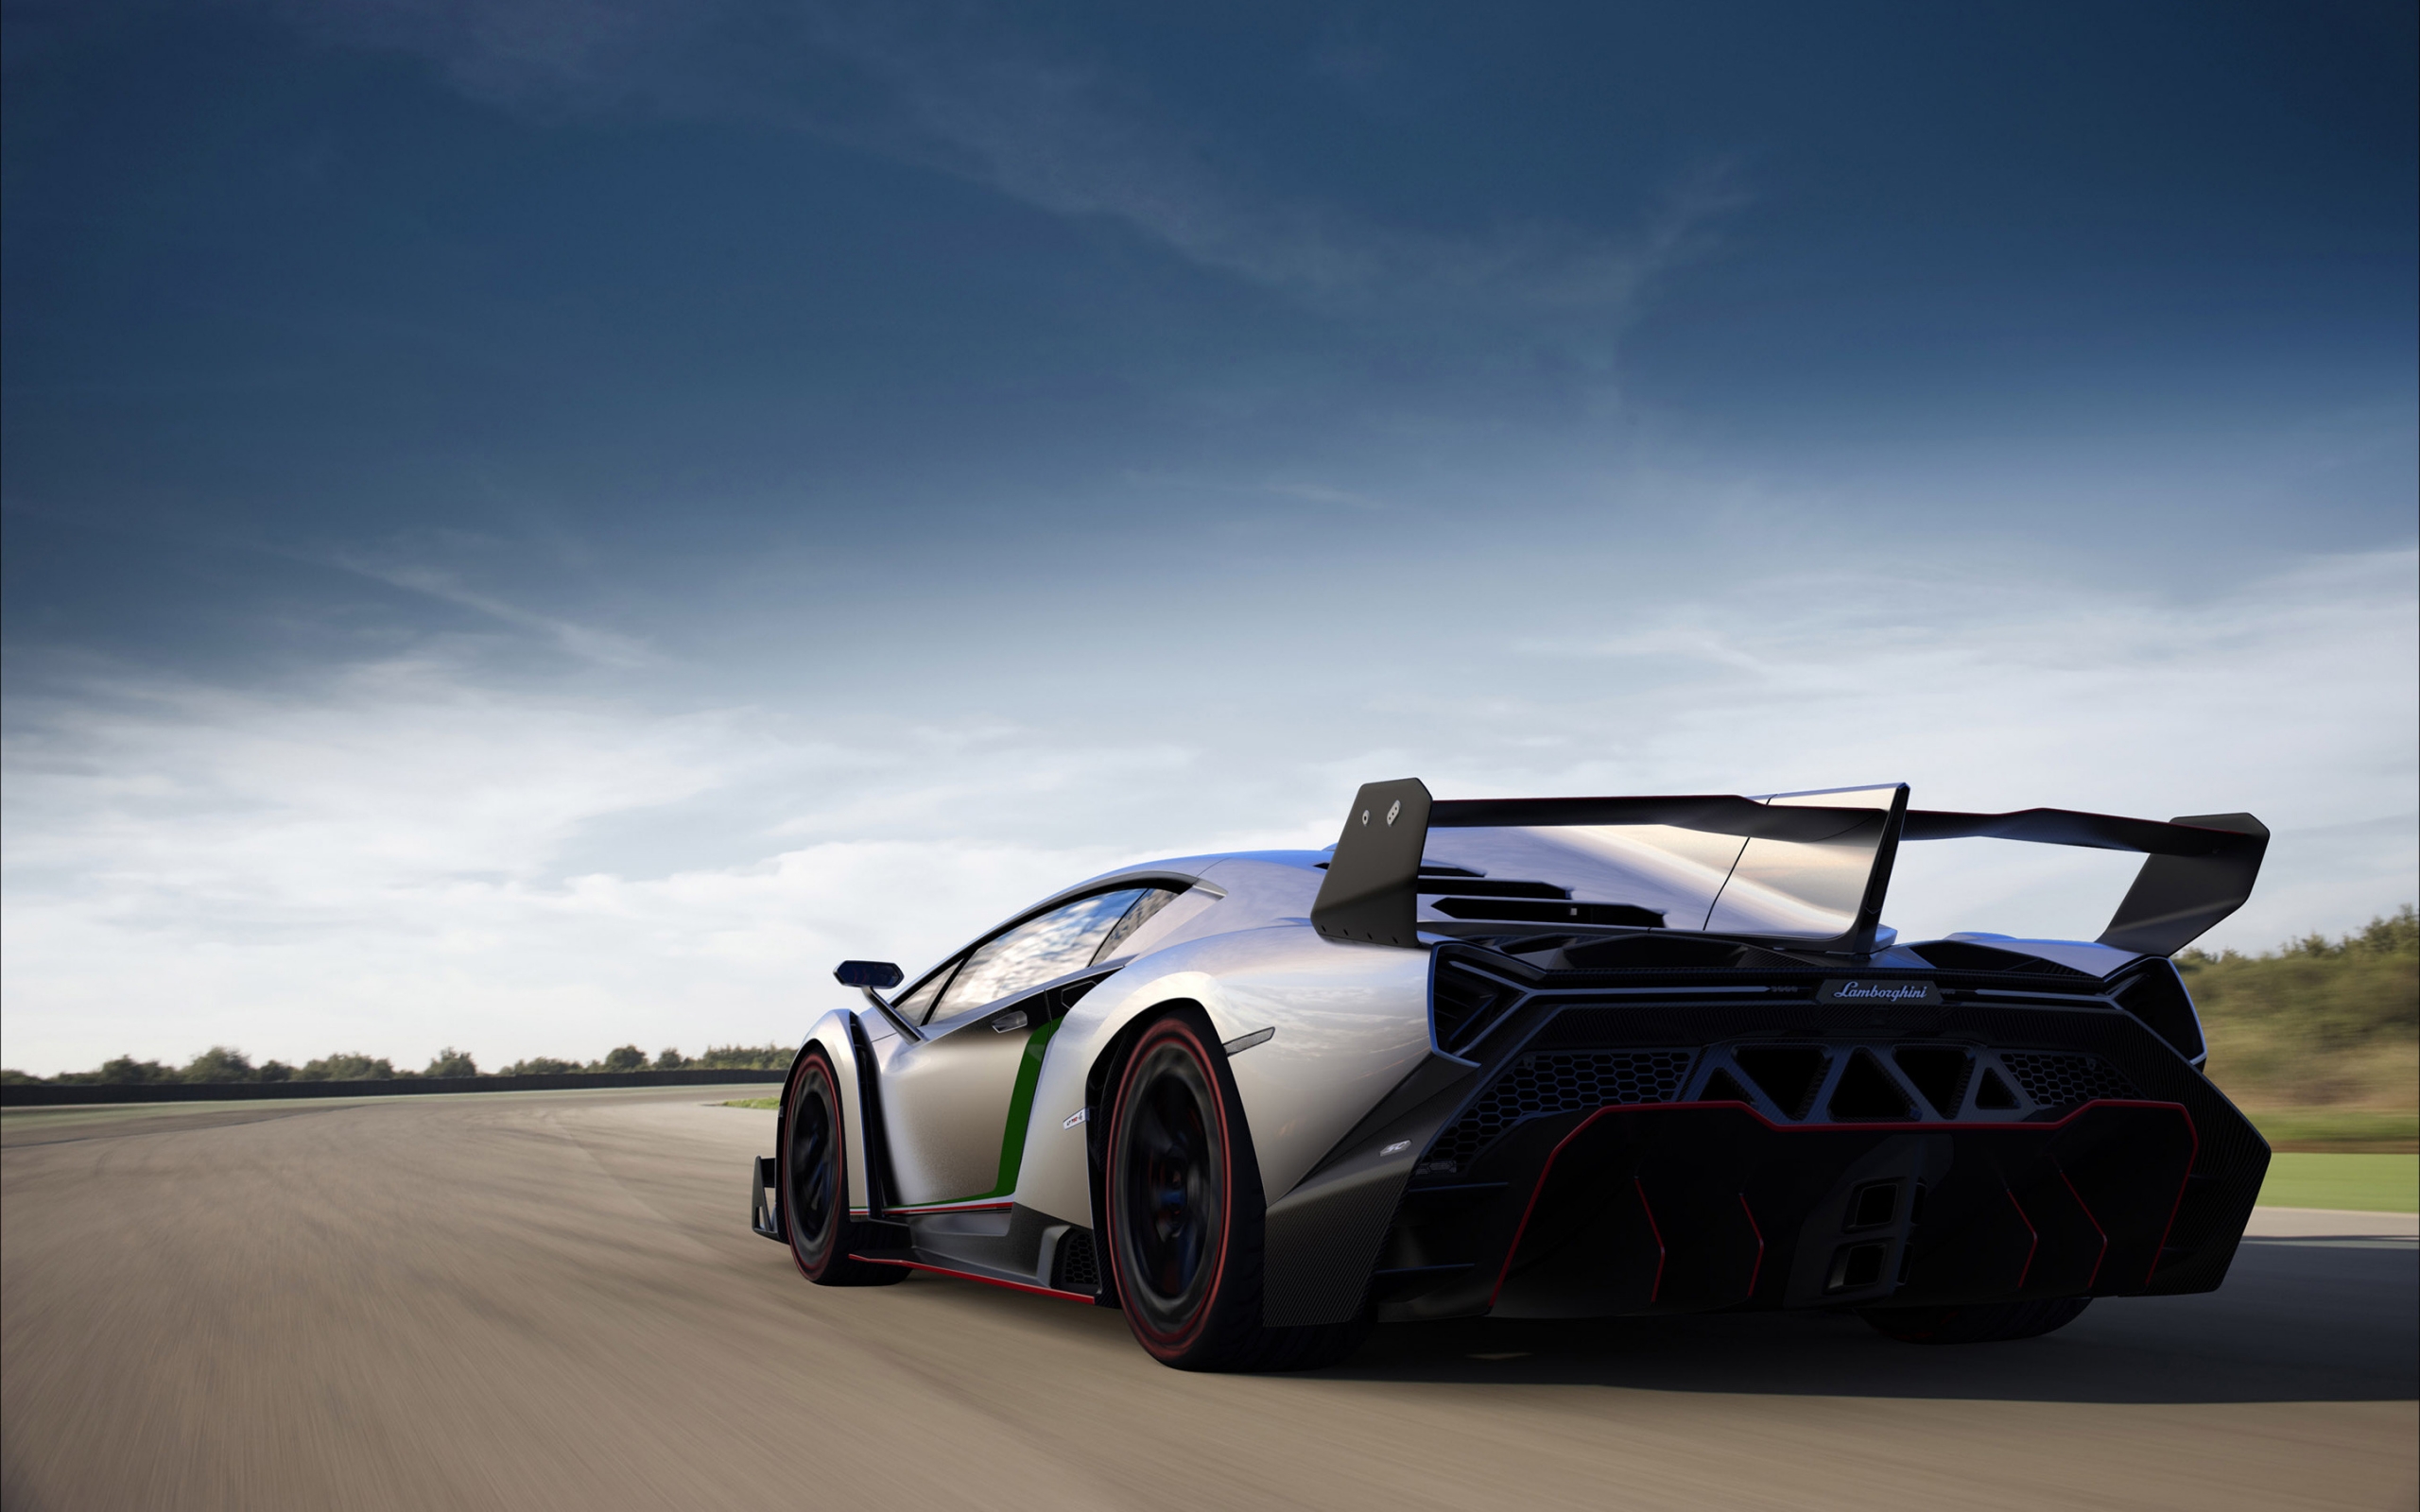 Lamborghini Veneno Rear for 2560 x 1600 widescreen resolution